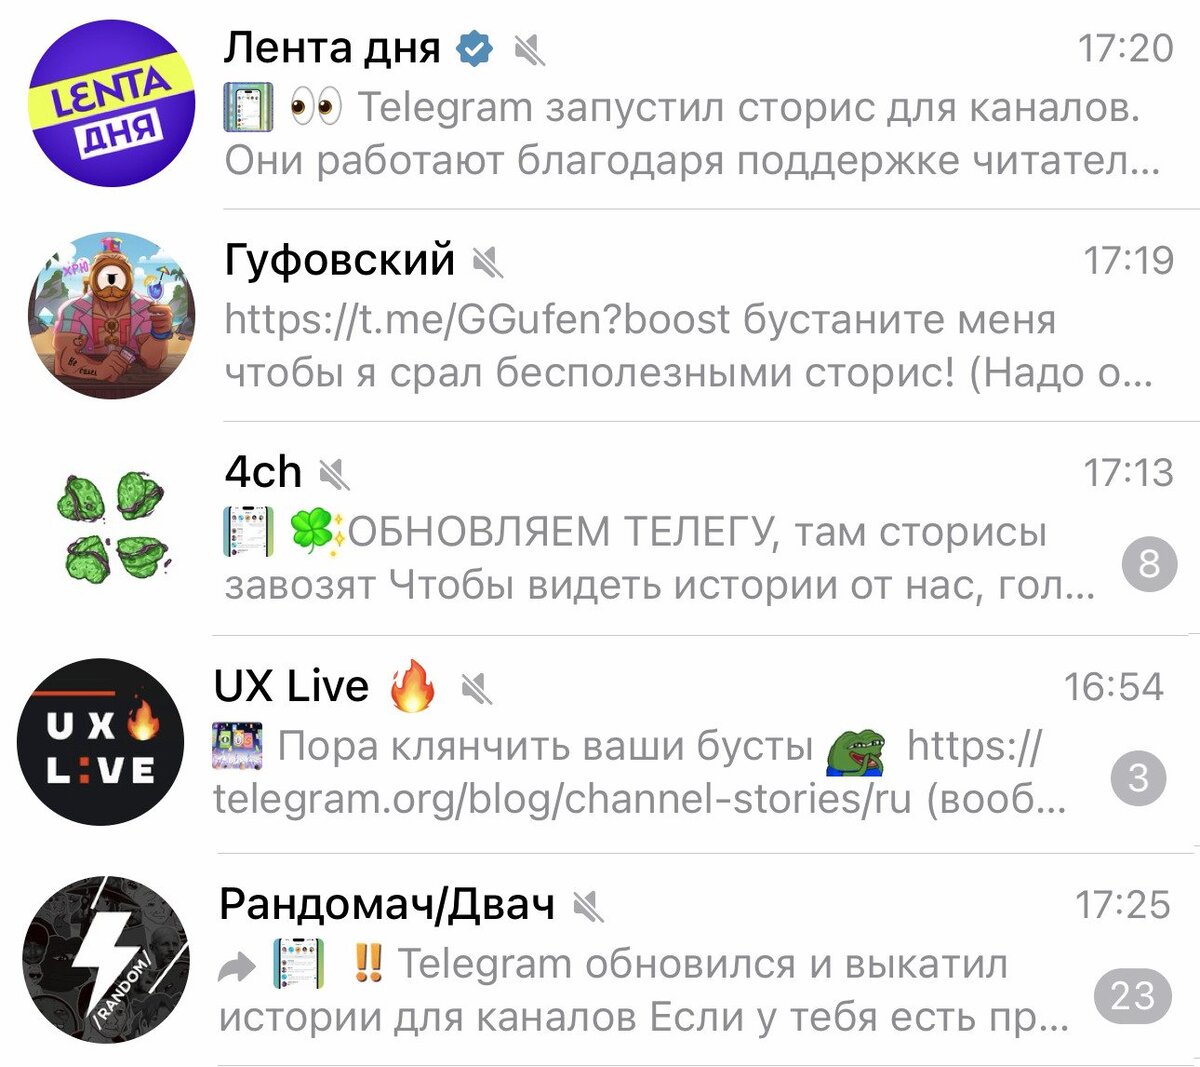 Как обновить телеграмм на телефоне андроид бесплатно на русском языке без регистрации фото 90